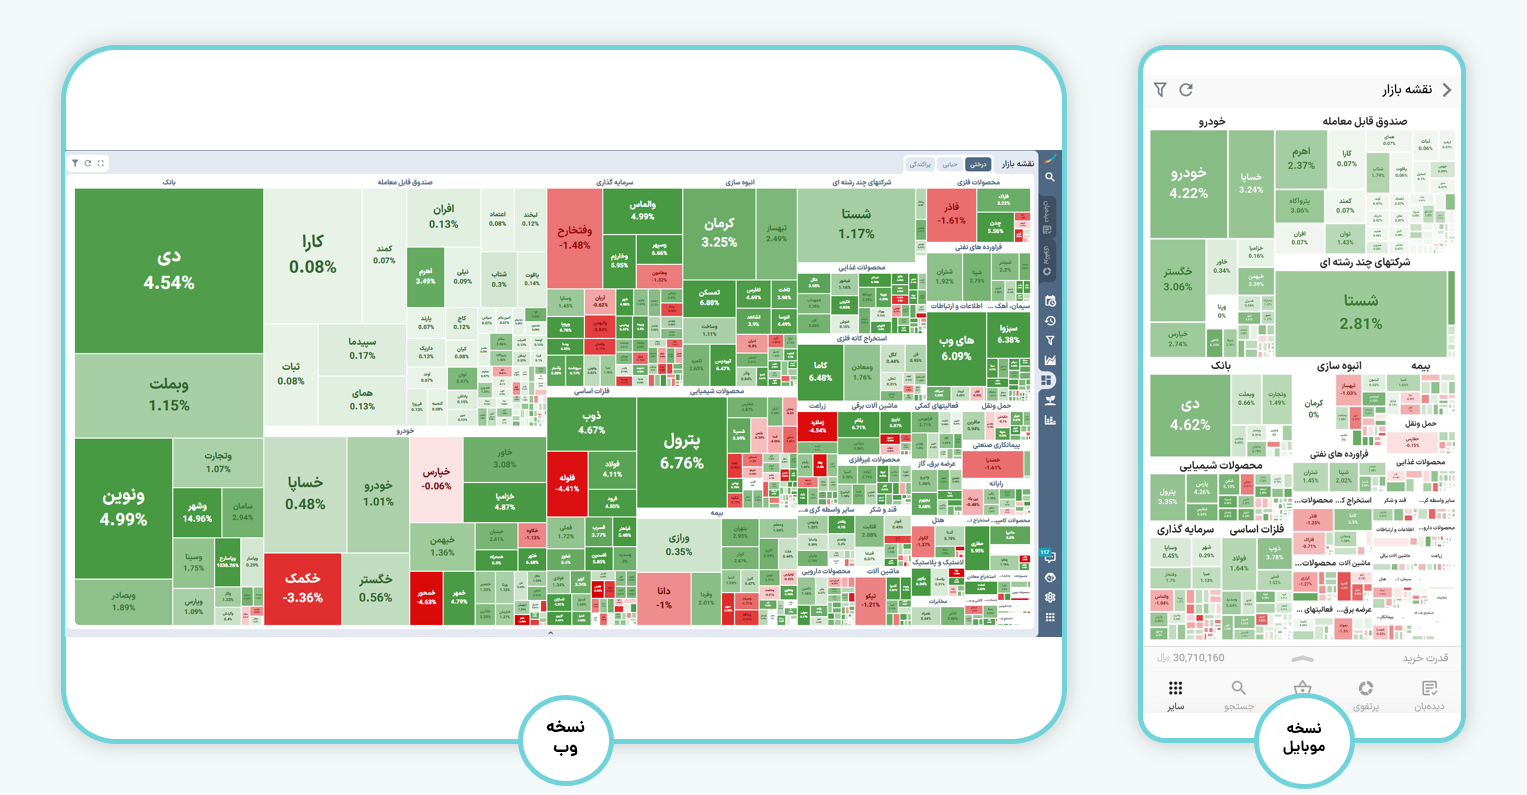 نمای کلی «نقشه بازار» در ایزی تریدر نسخه جدید (اربیس)